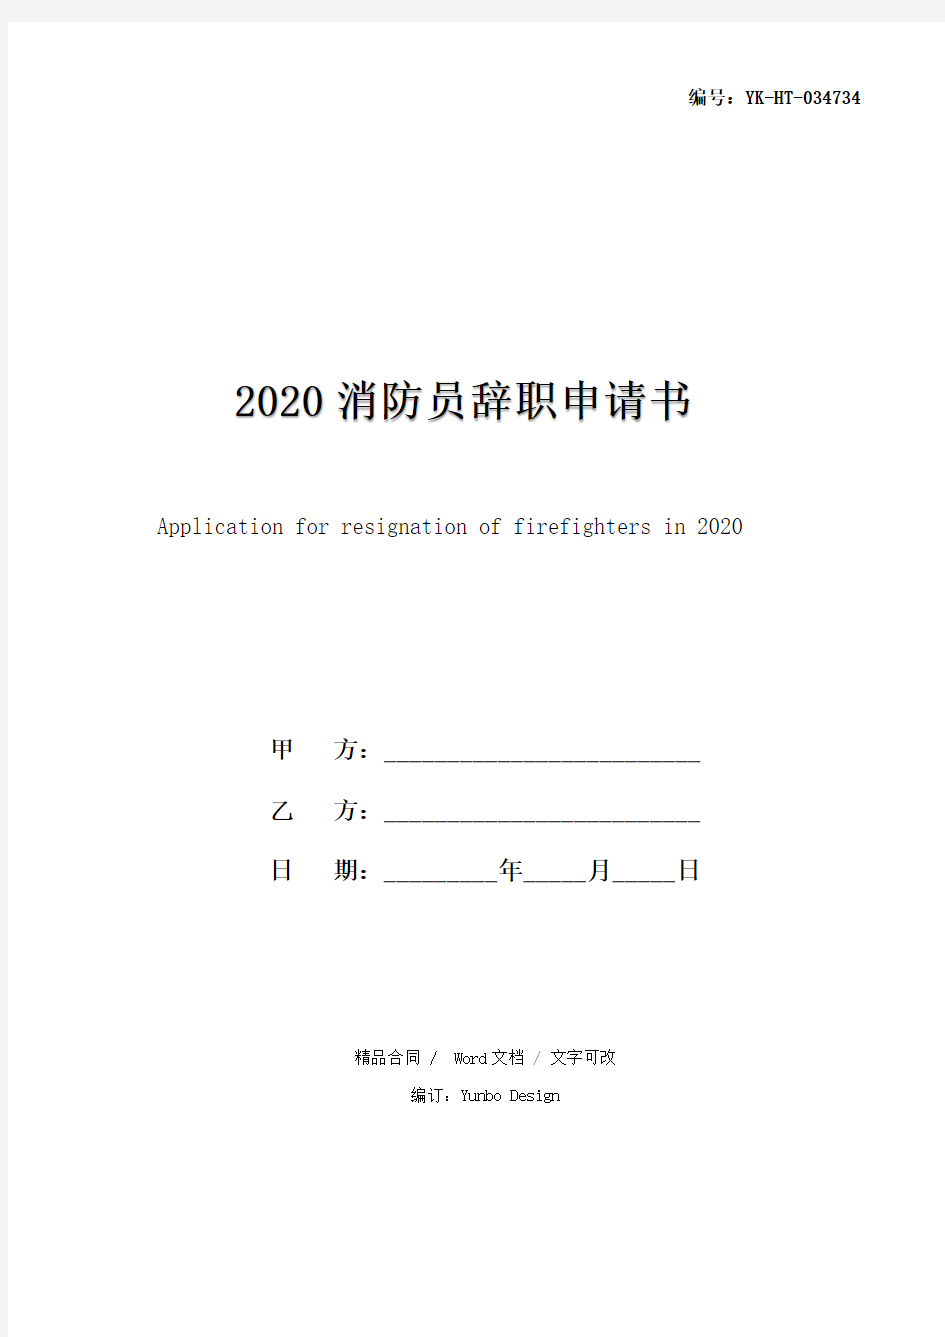 2020消防员辞职申请书(通用版)